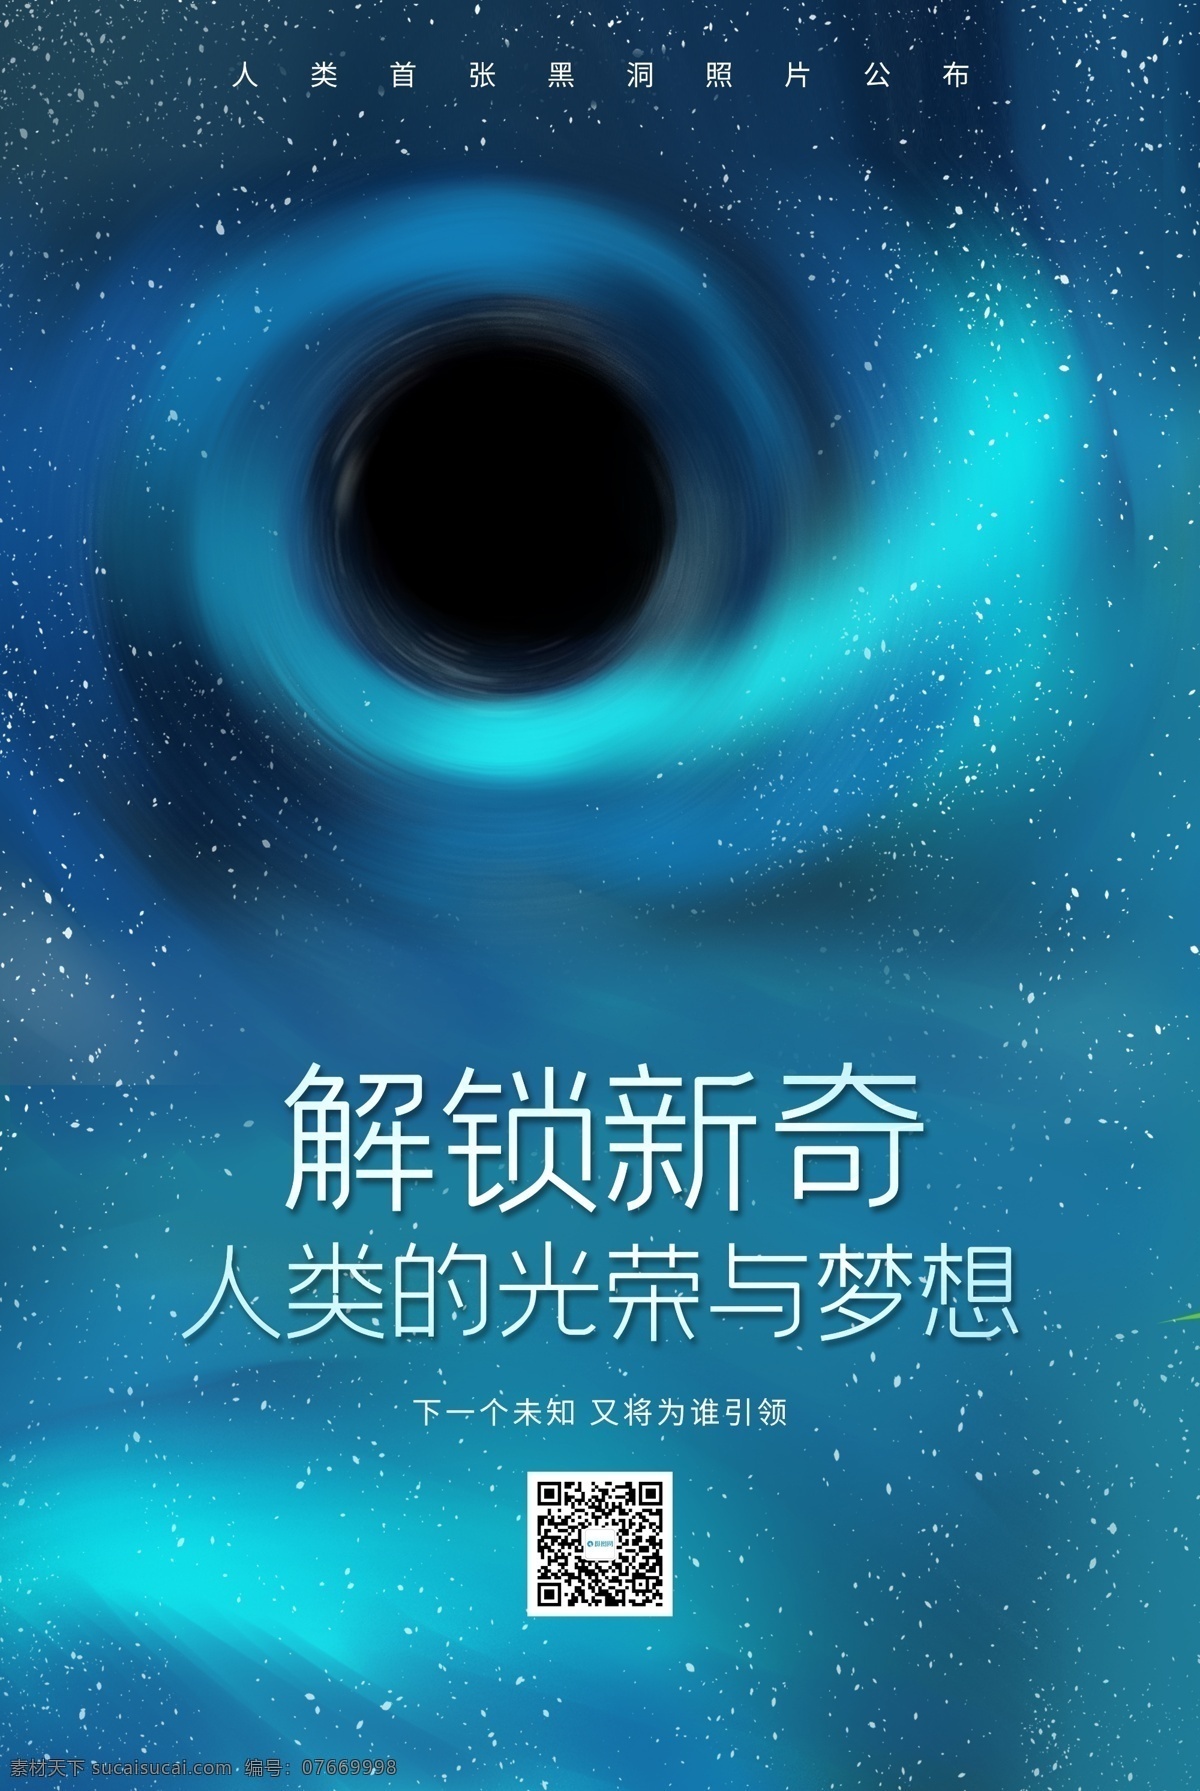 宇宙 探索 黑洞 照片 公布 海报 奥秘 未来 梦想 荣耀 黑洞照片 首 次 公开 进步 文明 人类 征途 神秘 星空